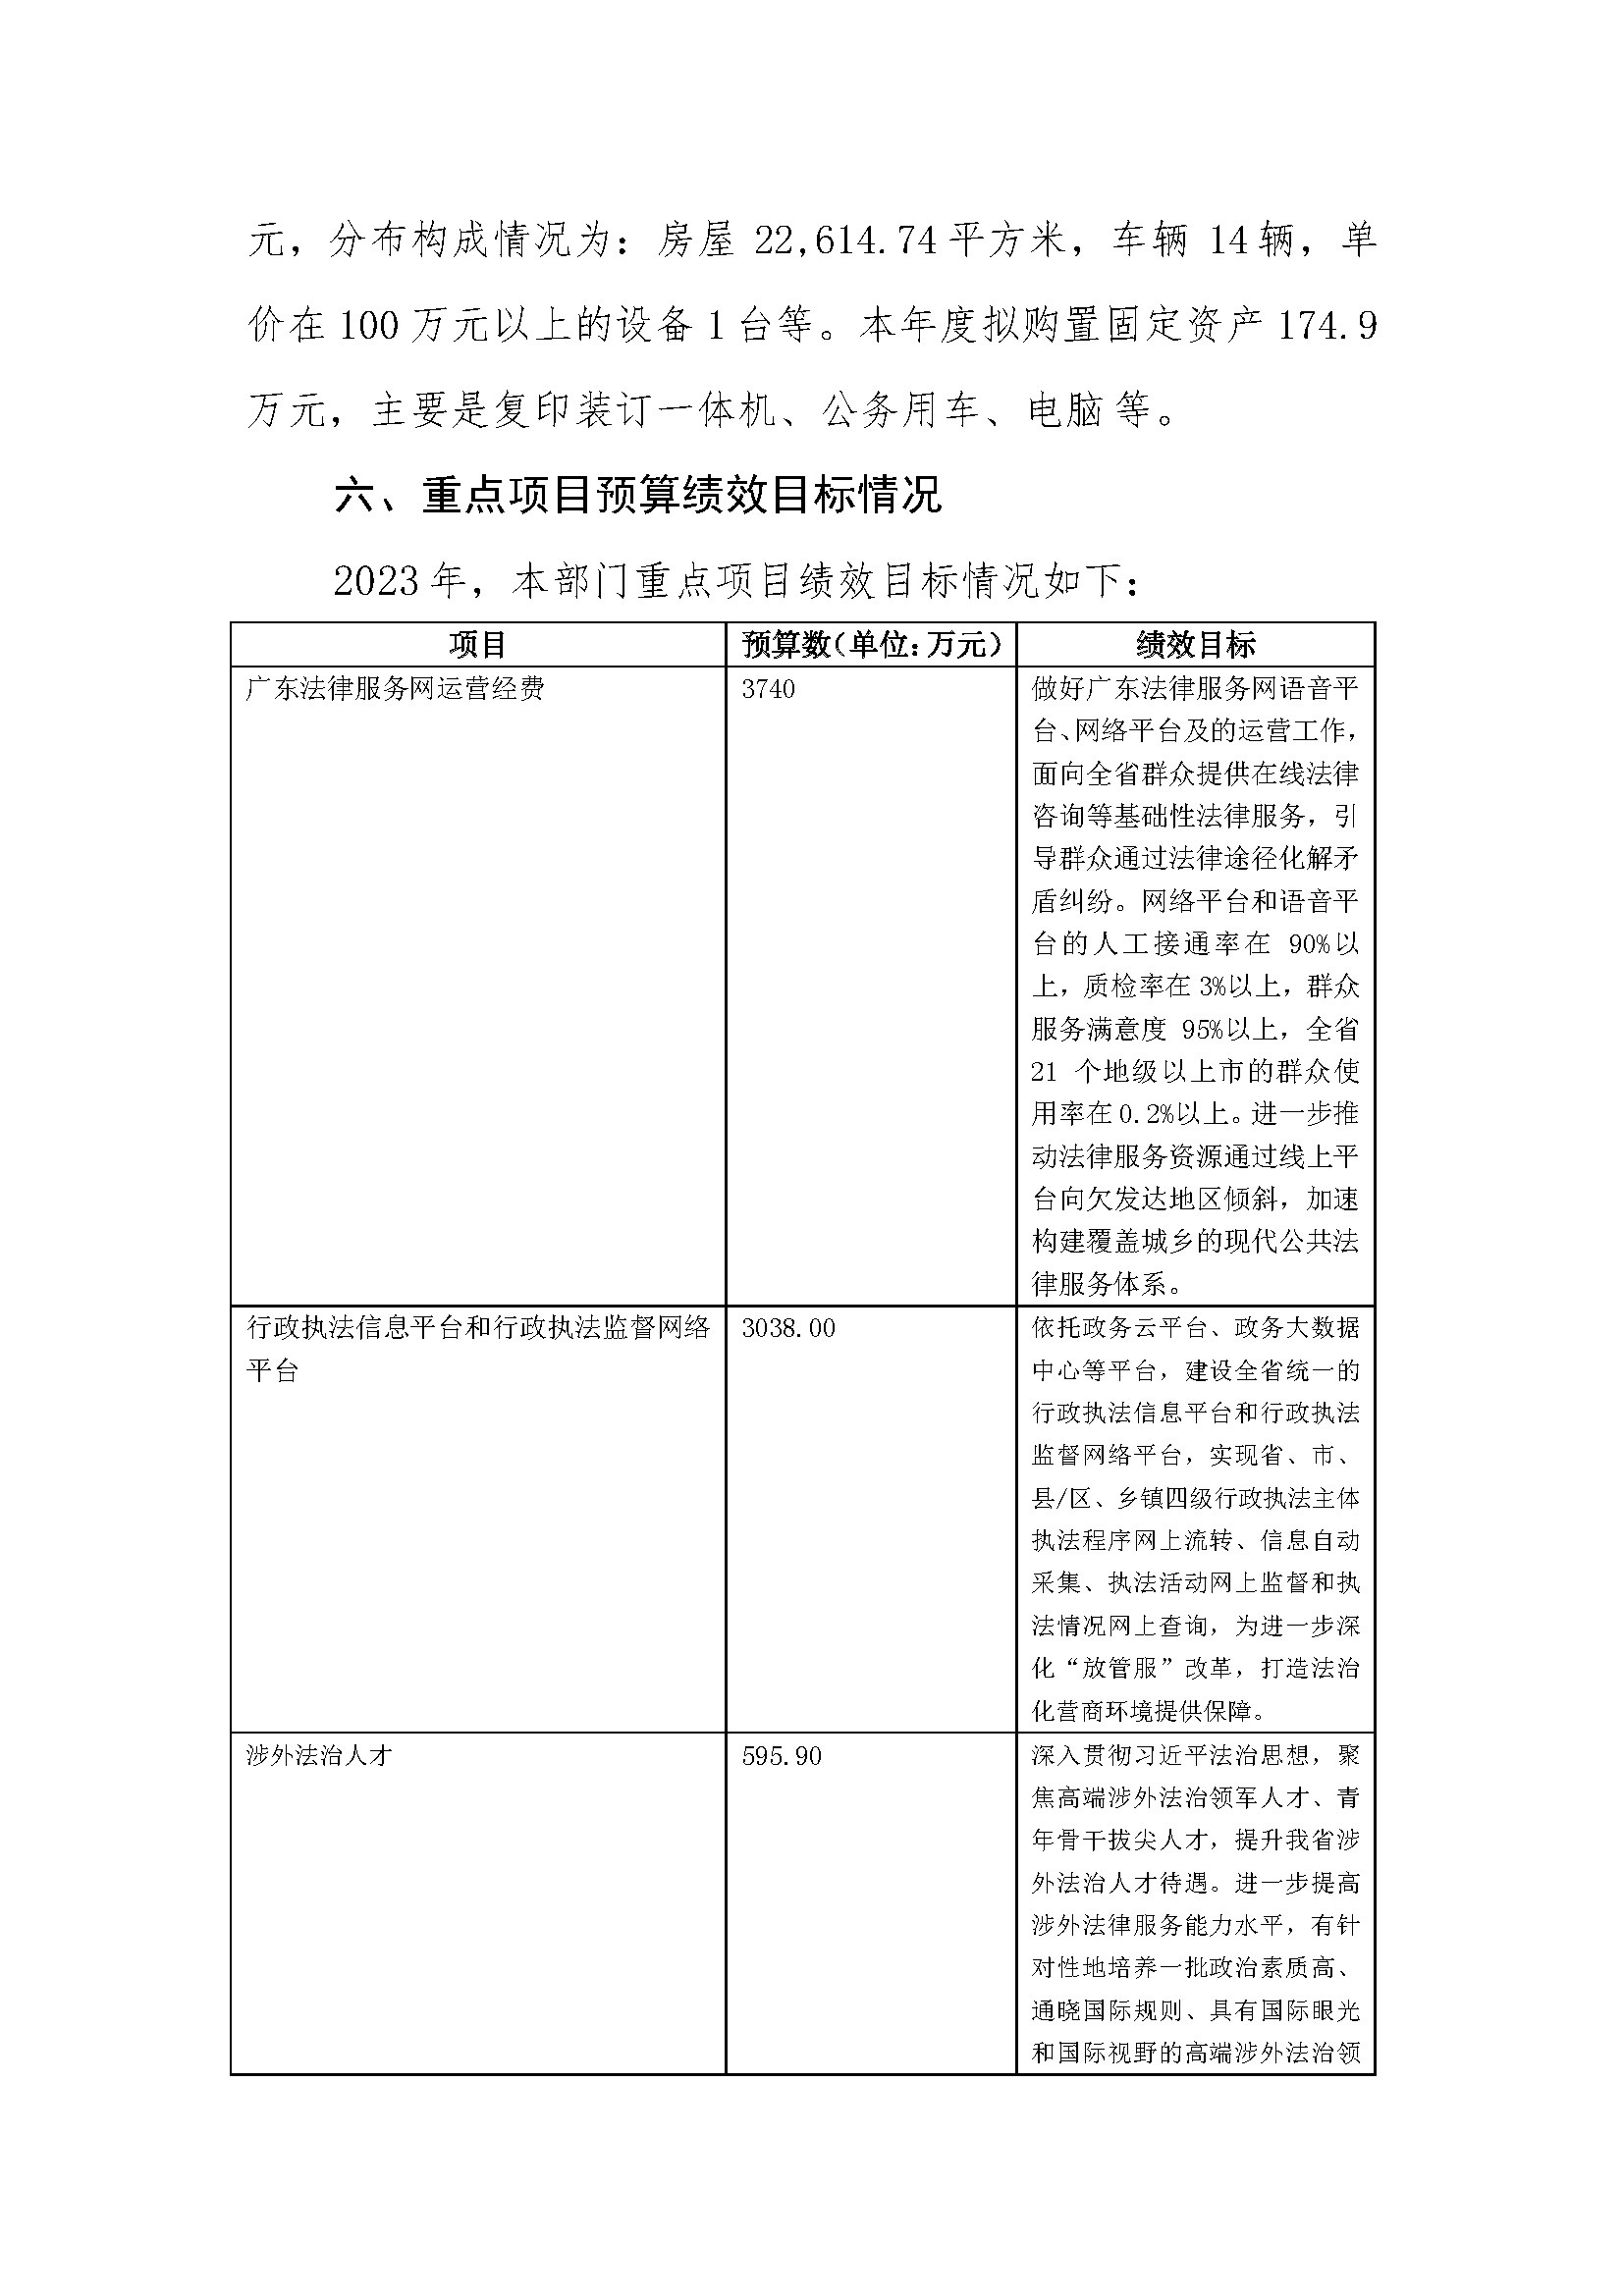 2023年广东省司法厅部门预算_(0213)_页面_35.jpg